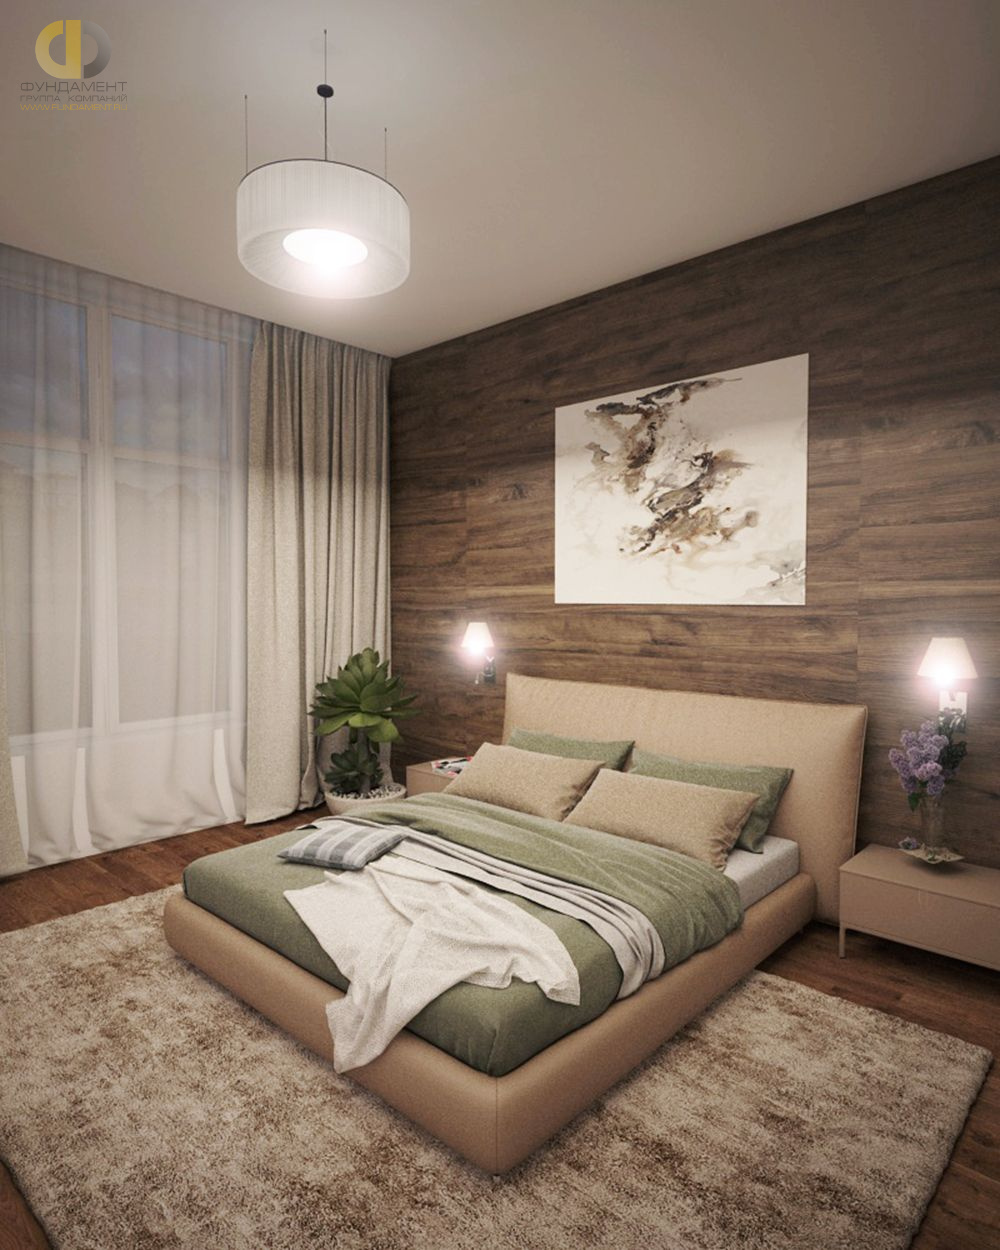 Спальня в стиле дизайна минимализм по адресу МО, Новорижское шоссе, 23 км от МКАД, с. Покровское, 2018 года